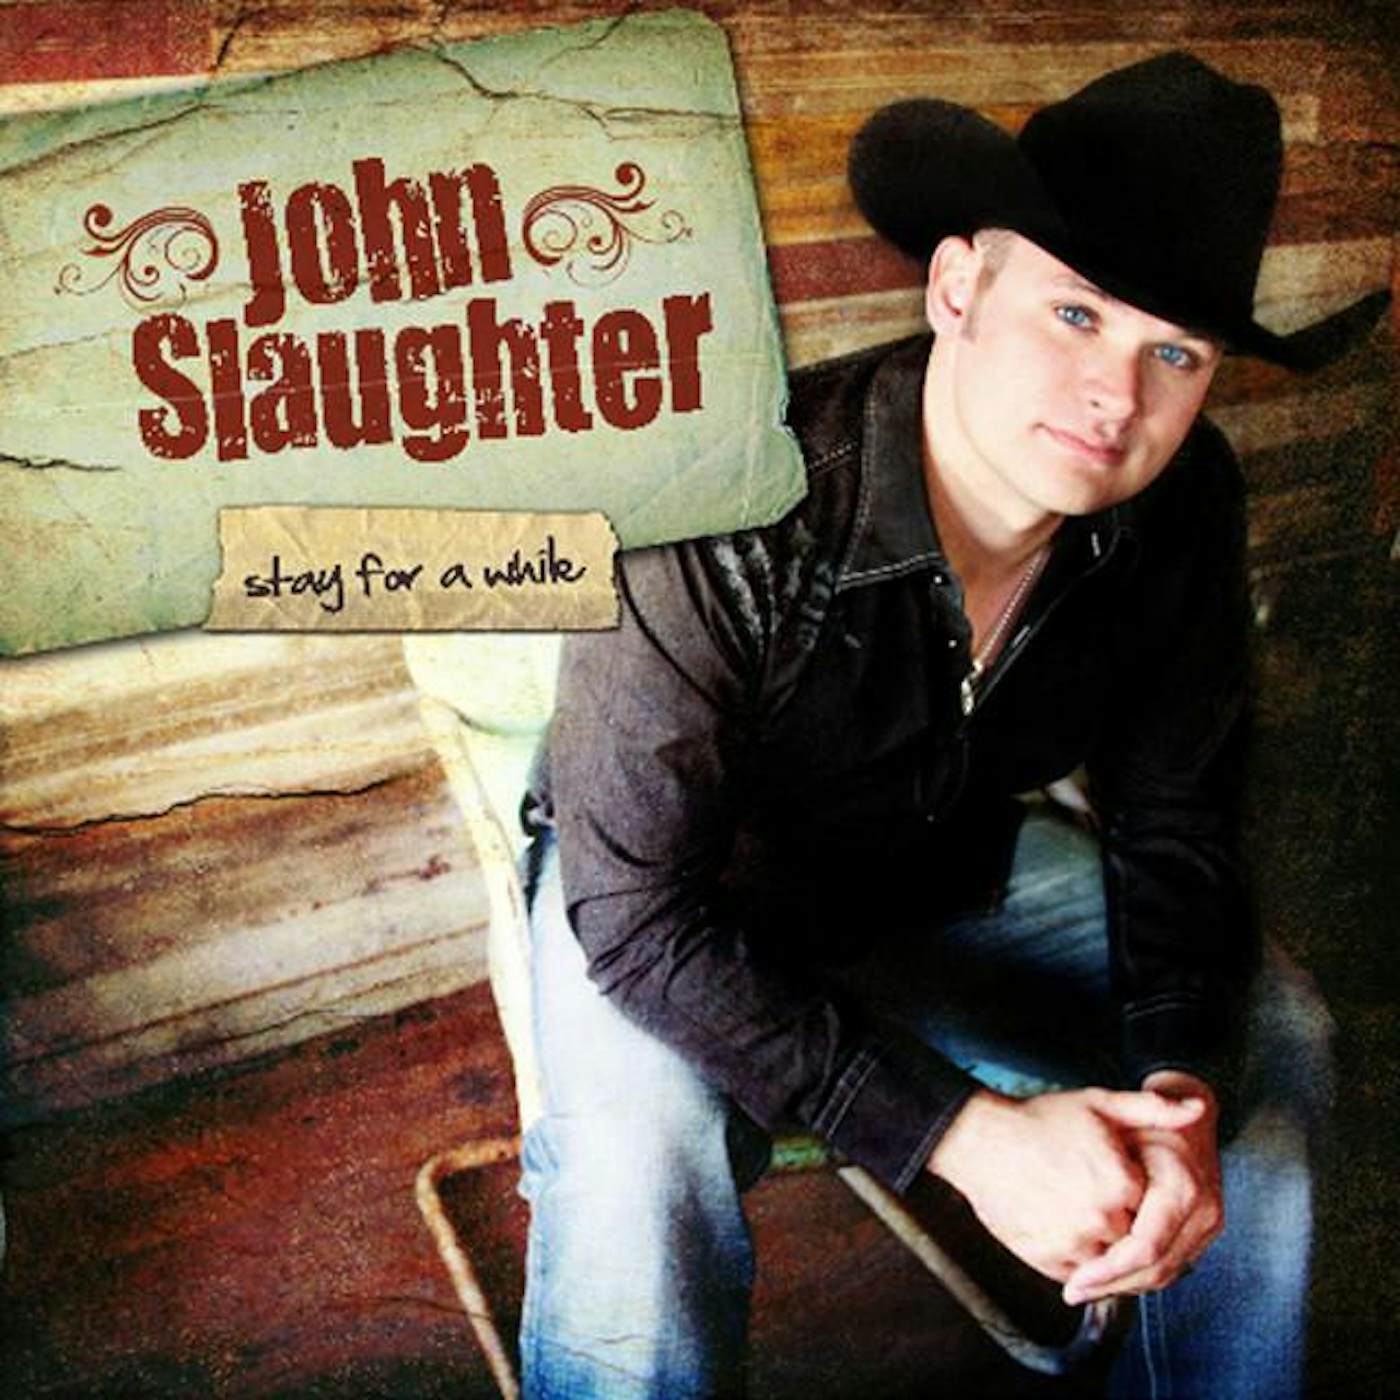 John Slaughter